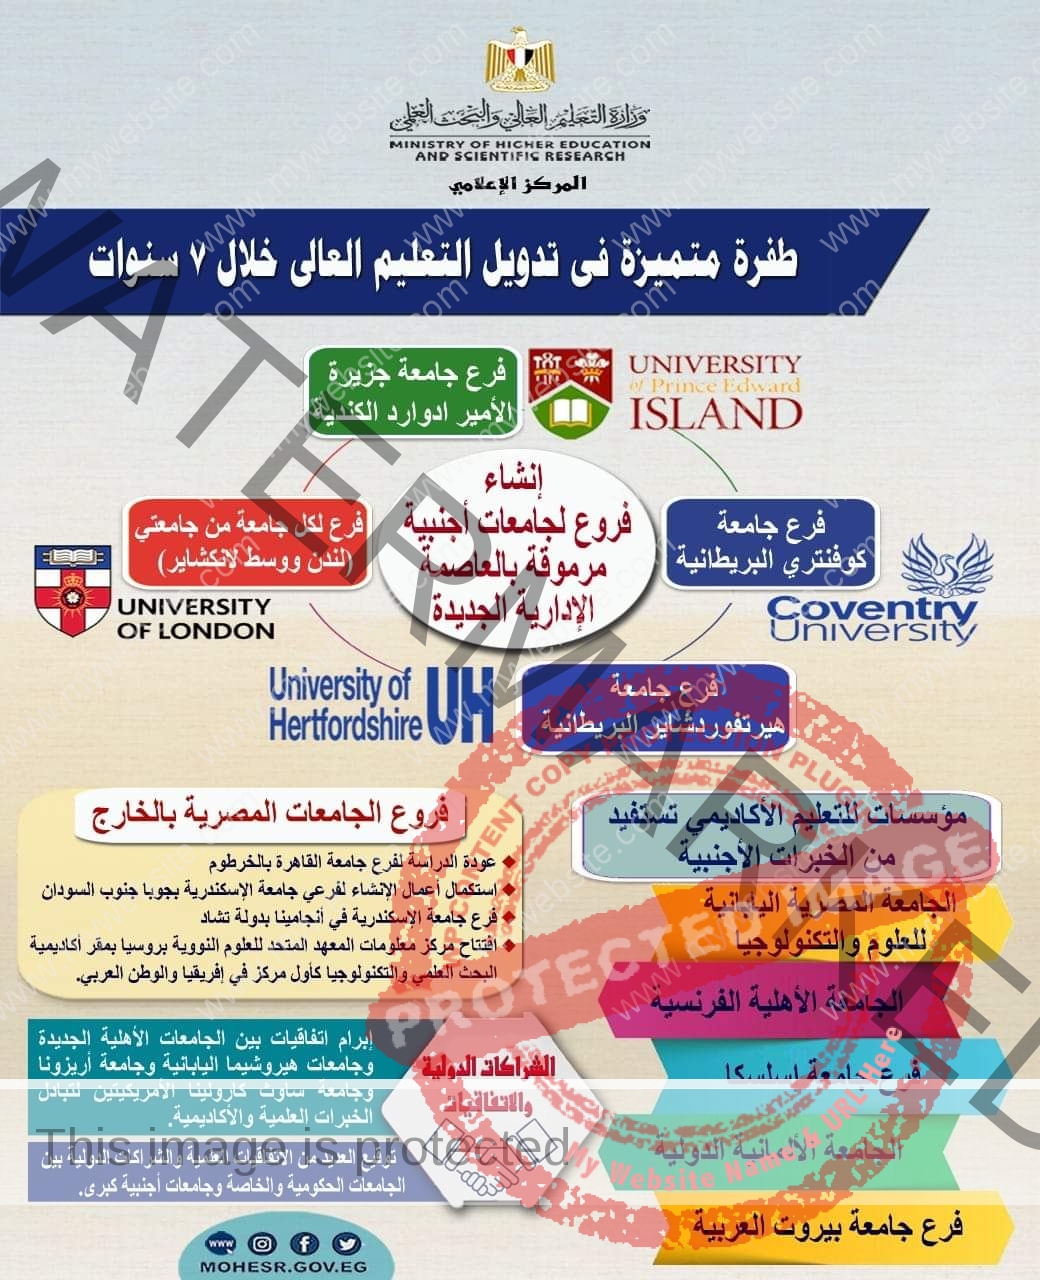 التعليم العالي: التوسع في إنشاء فروع لجامعات أجنبية مرموقة على أرض مصر